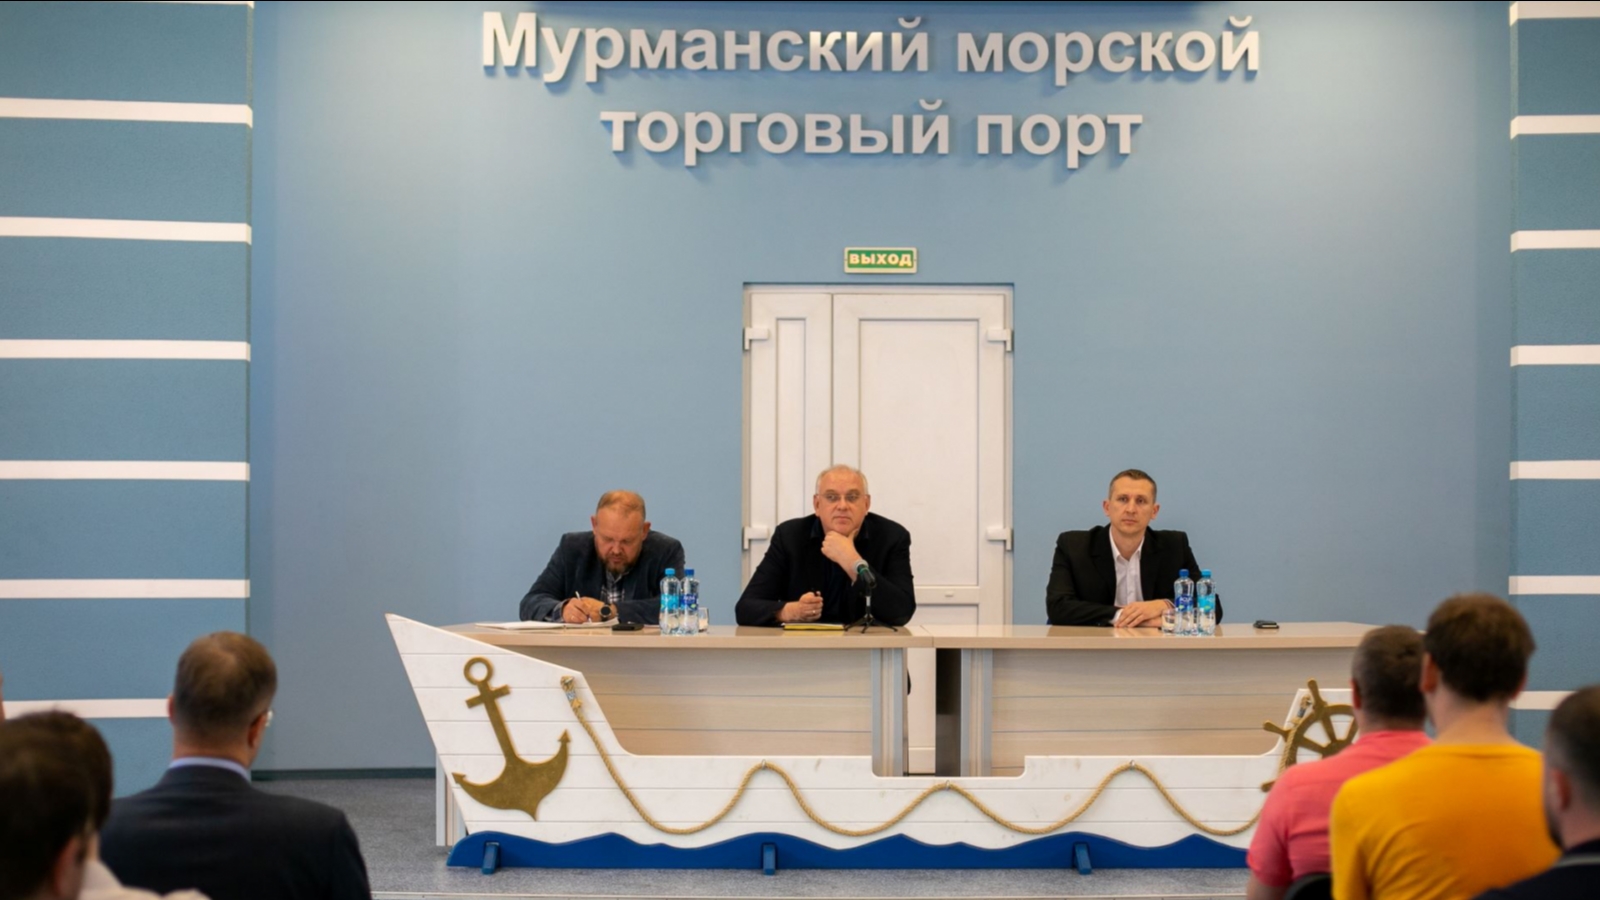 Директор Мурманского торгового порта Павел Олейник: «В наши дни универсальные возможности ММТП становятся всё более значимыми»